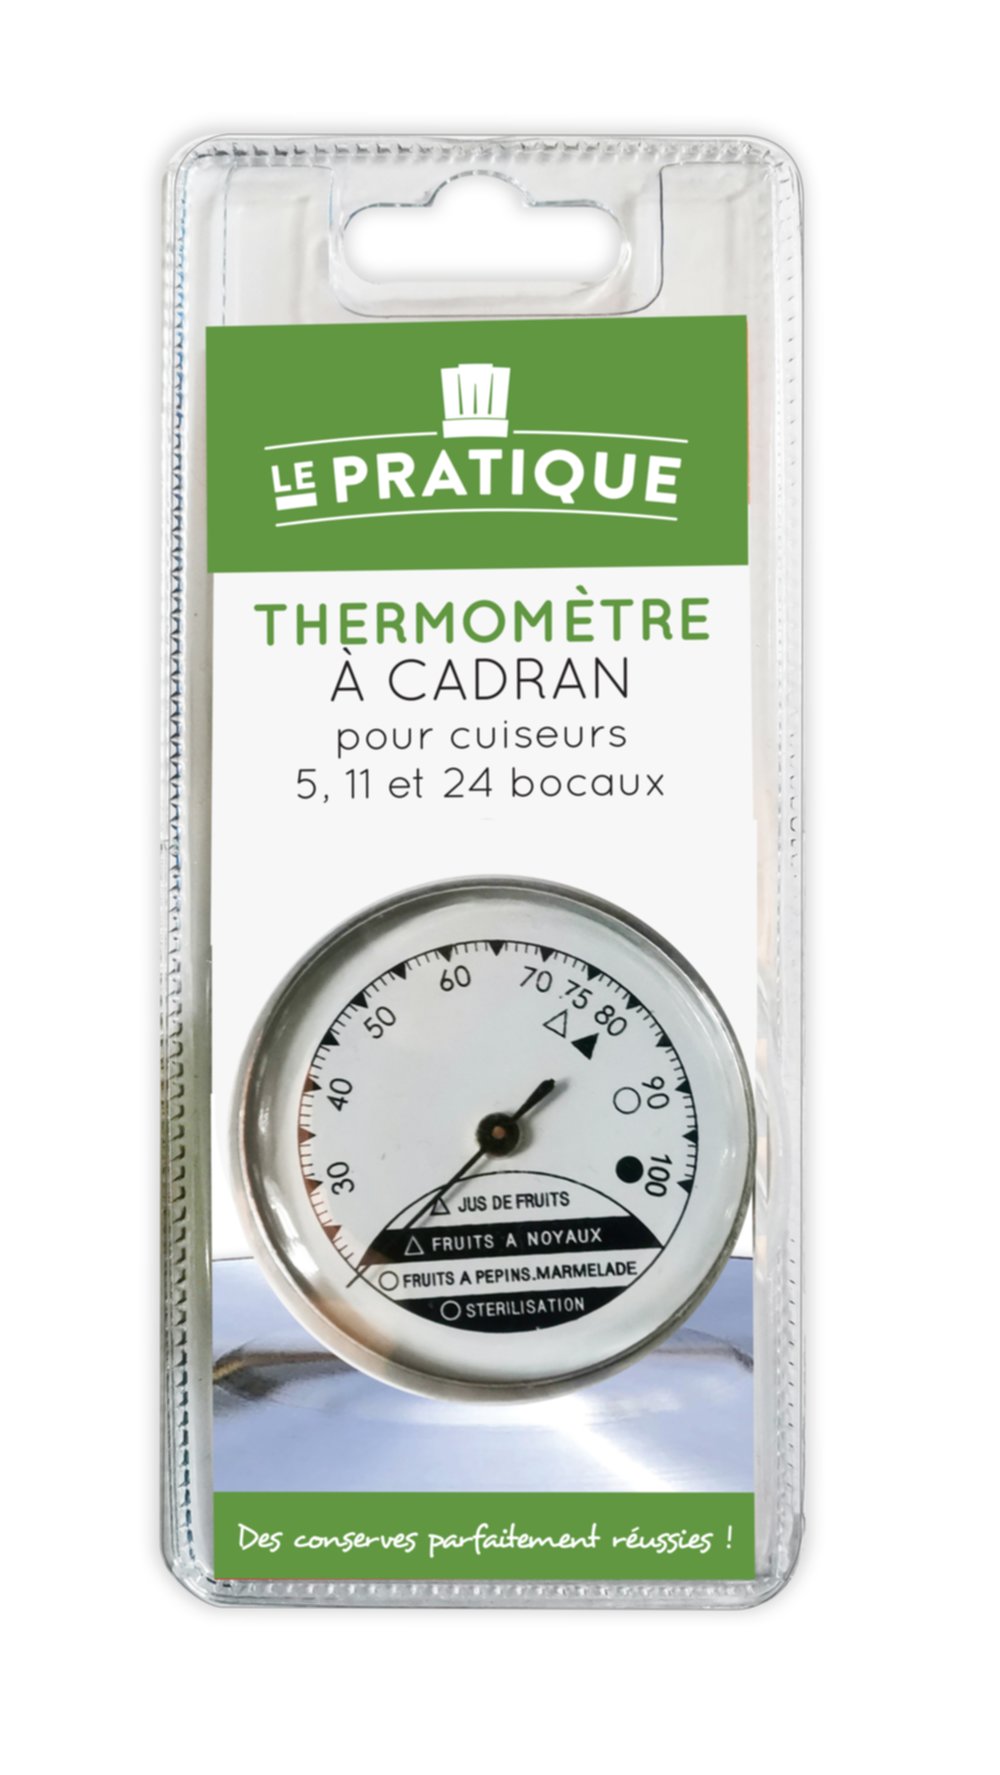 Thermometre à Cadran - LE PRATIQUE